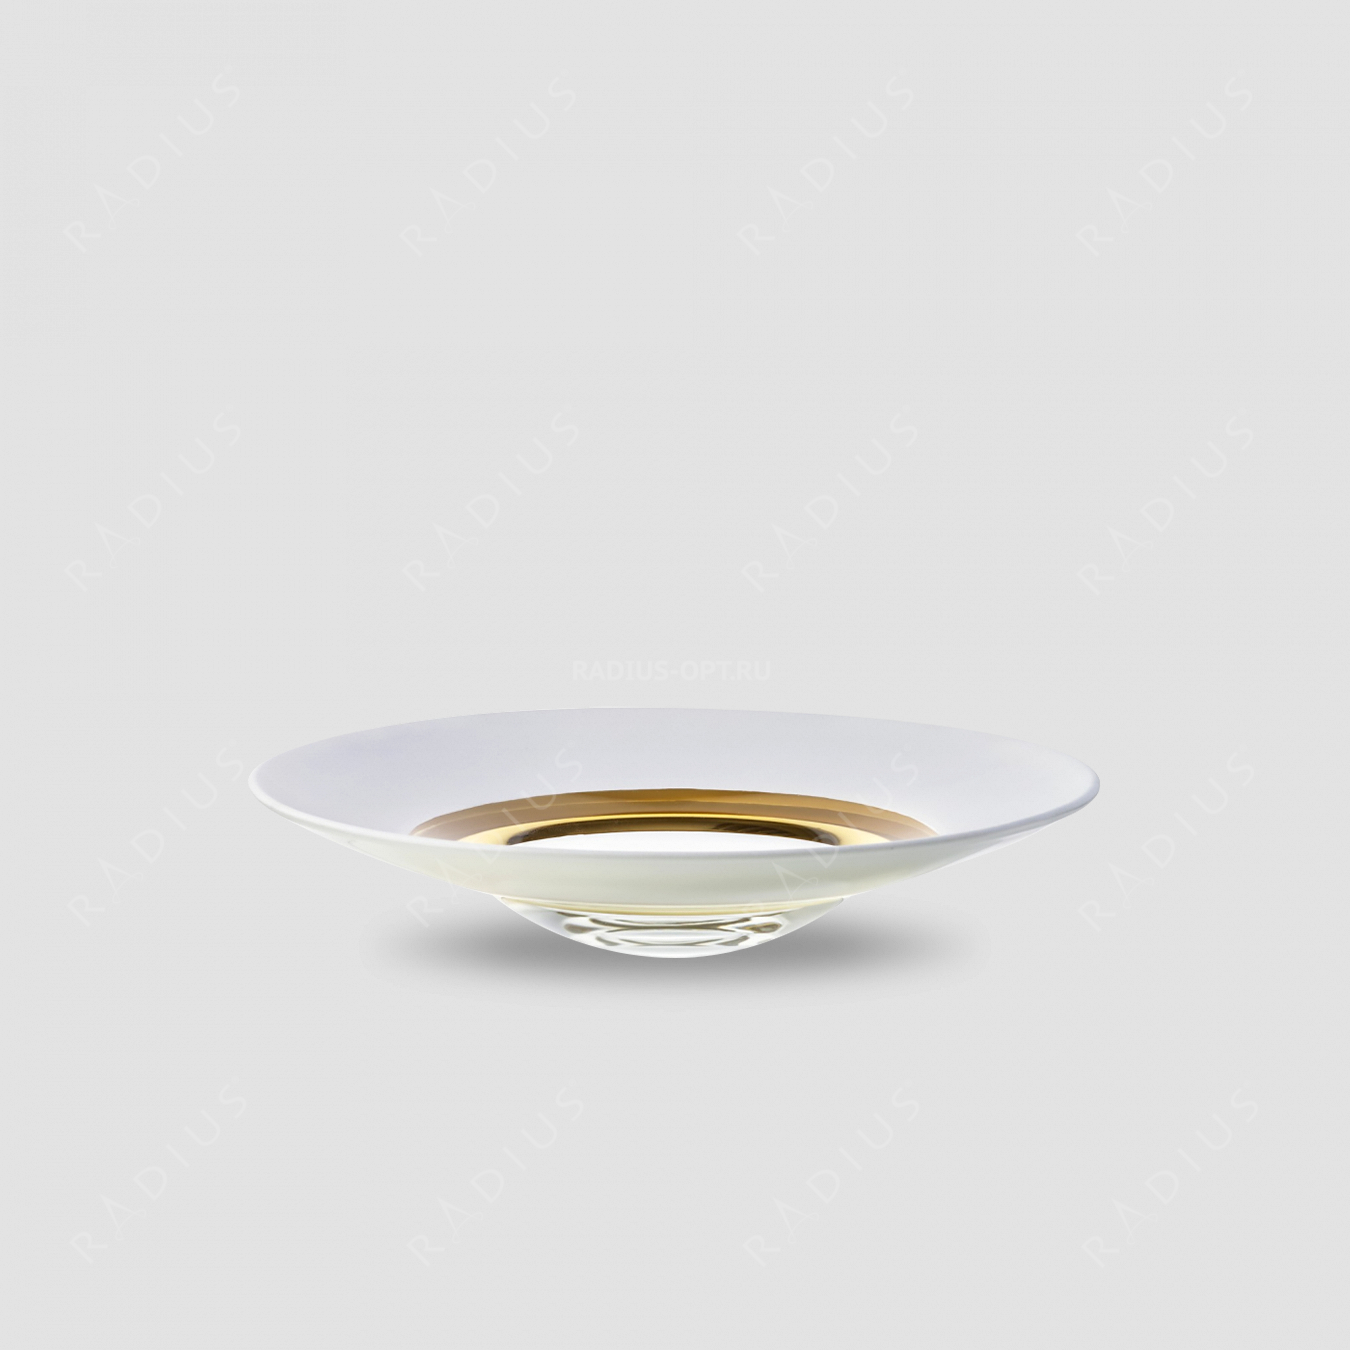 Тарелка глубокая Weiss, диаметр: 35 см, материал: бессвинцовый хрусталь, цвет: белый/золото, серия Cosmo, EISCH, Германия